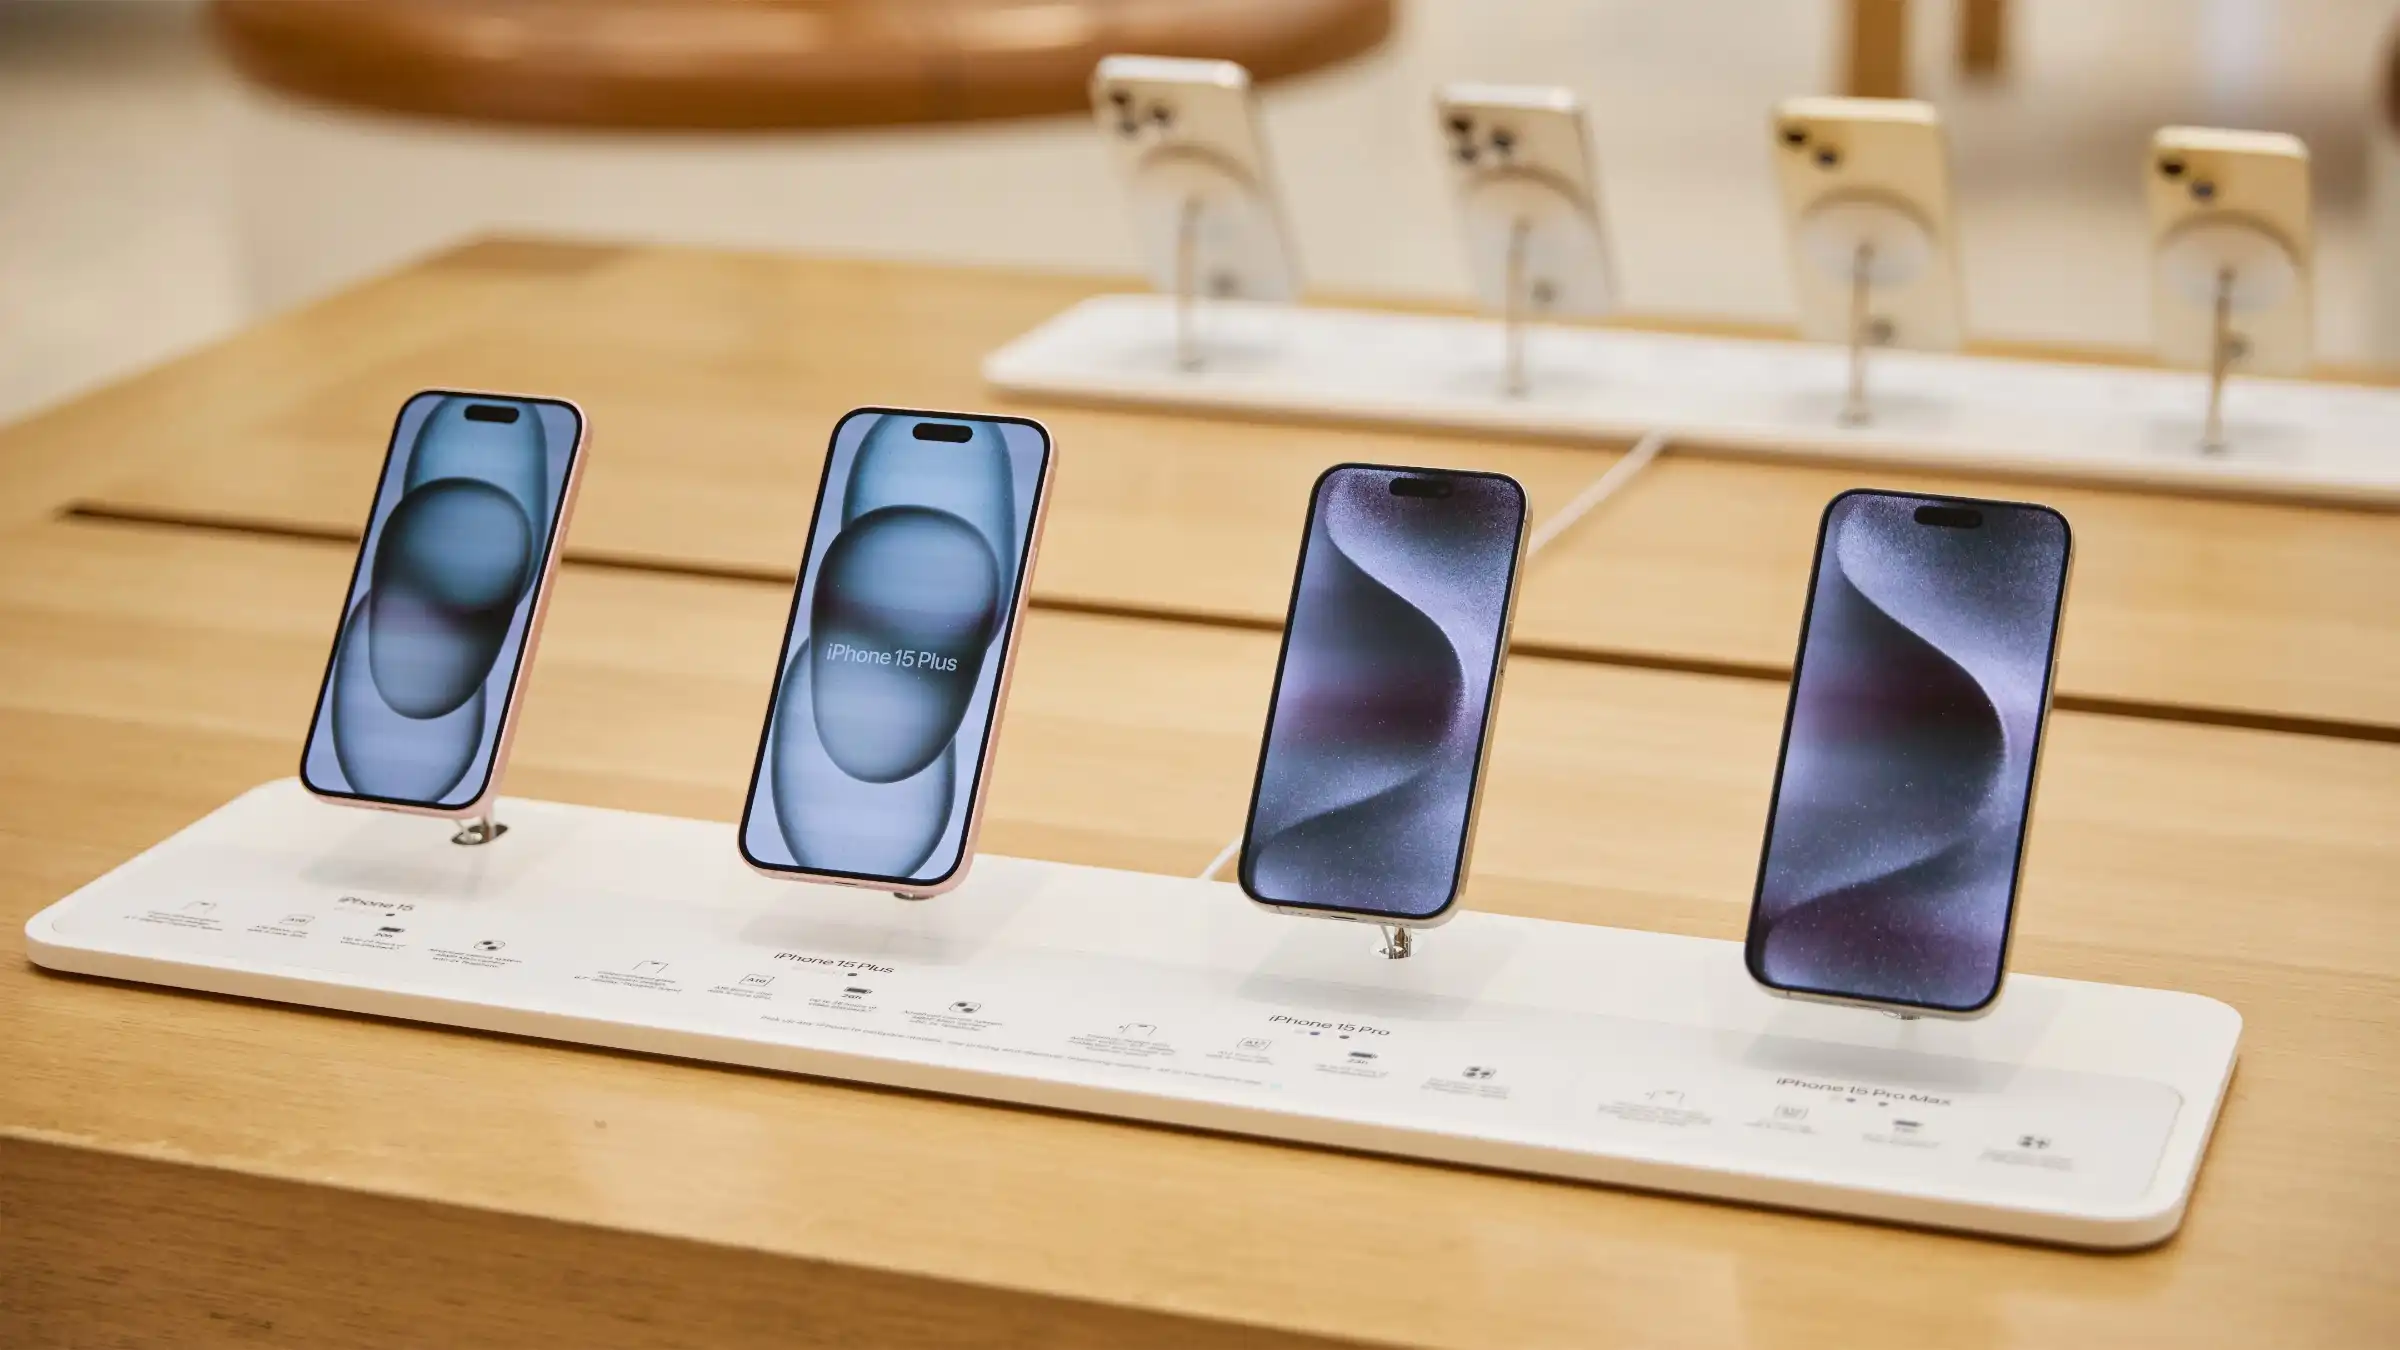 Apple dominou com 7 dos 10 smartphones mais vendidos no mundo em 2023